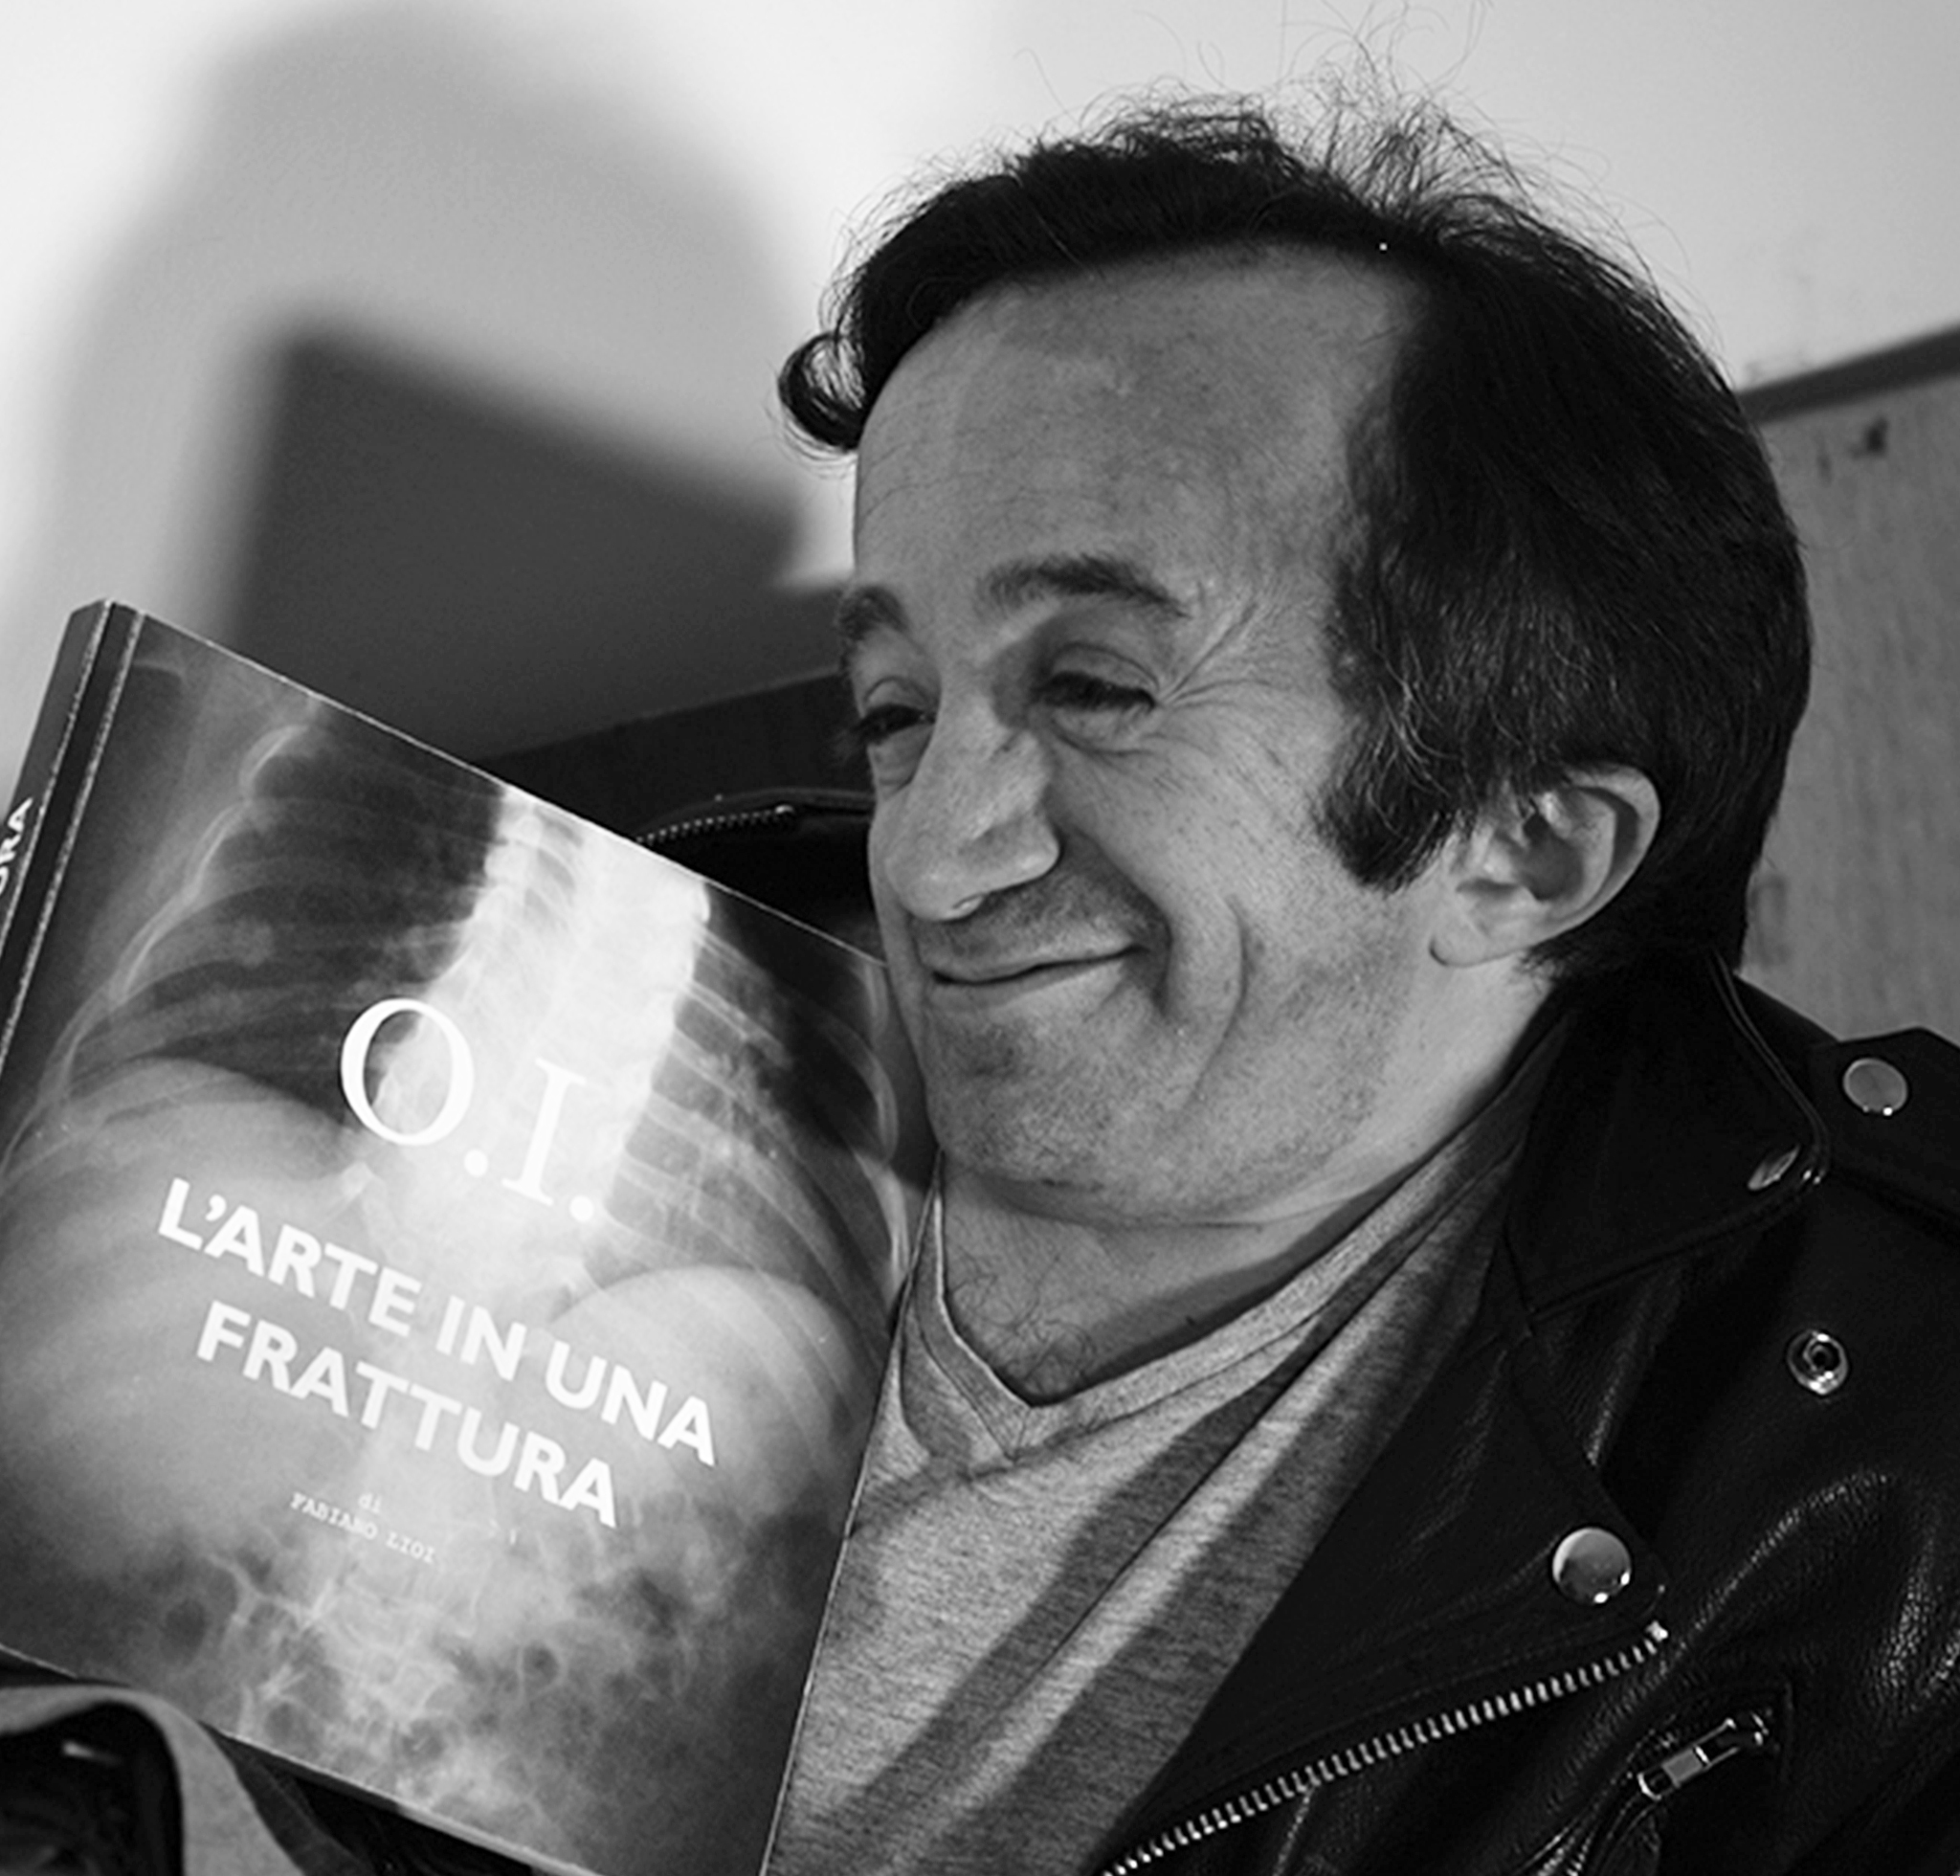 Fabiano Lioi Sorride con il suo libro O.I. L'arte in una frattura in mano, quasi sdraiato sulla sedia, e ti invita a leggere gli articoli del Blog!